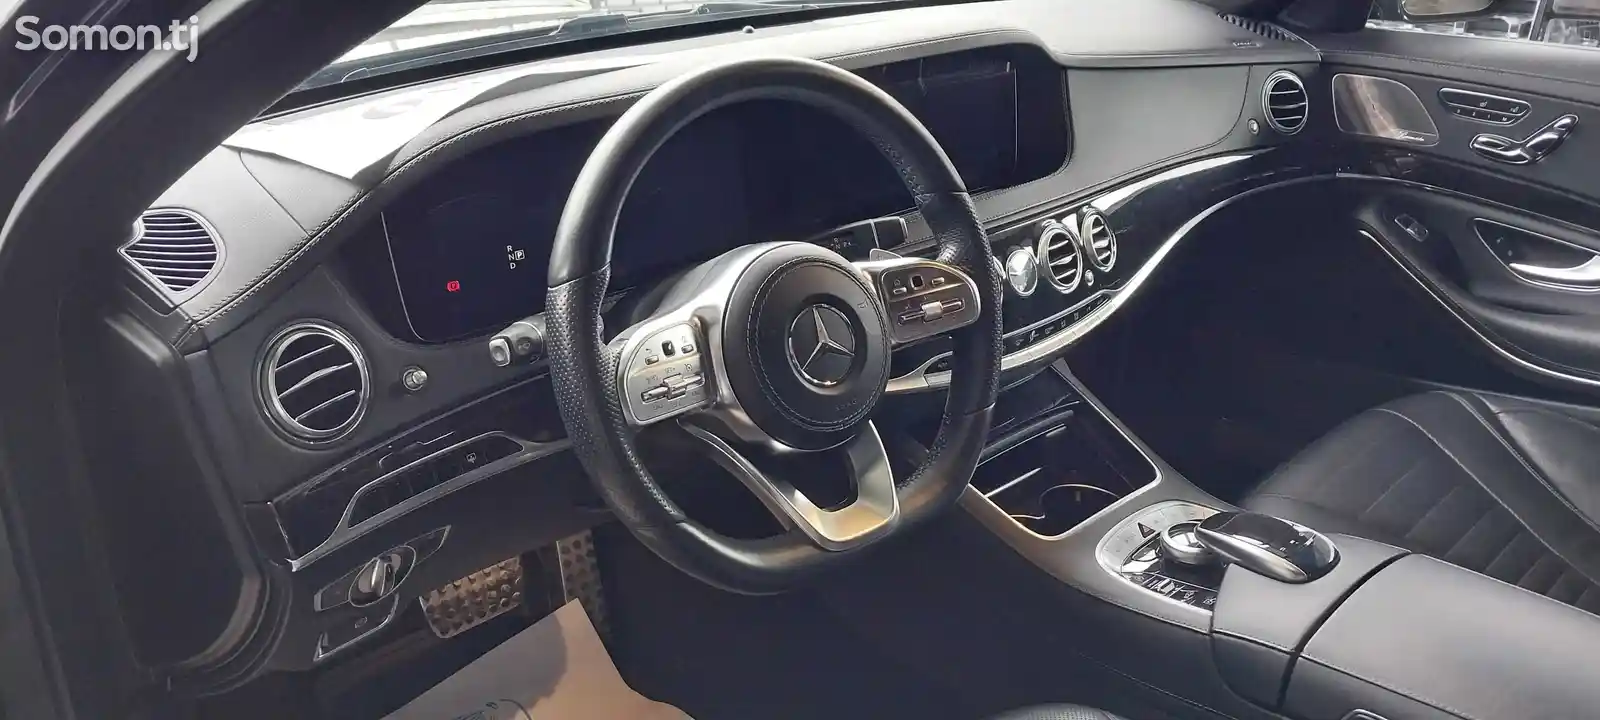 Mercedes-Benz S class, 2019-11